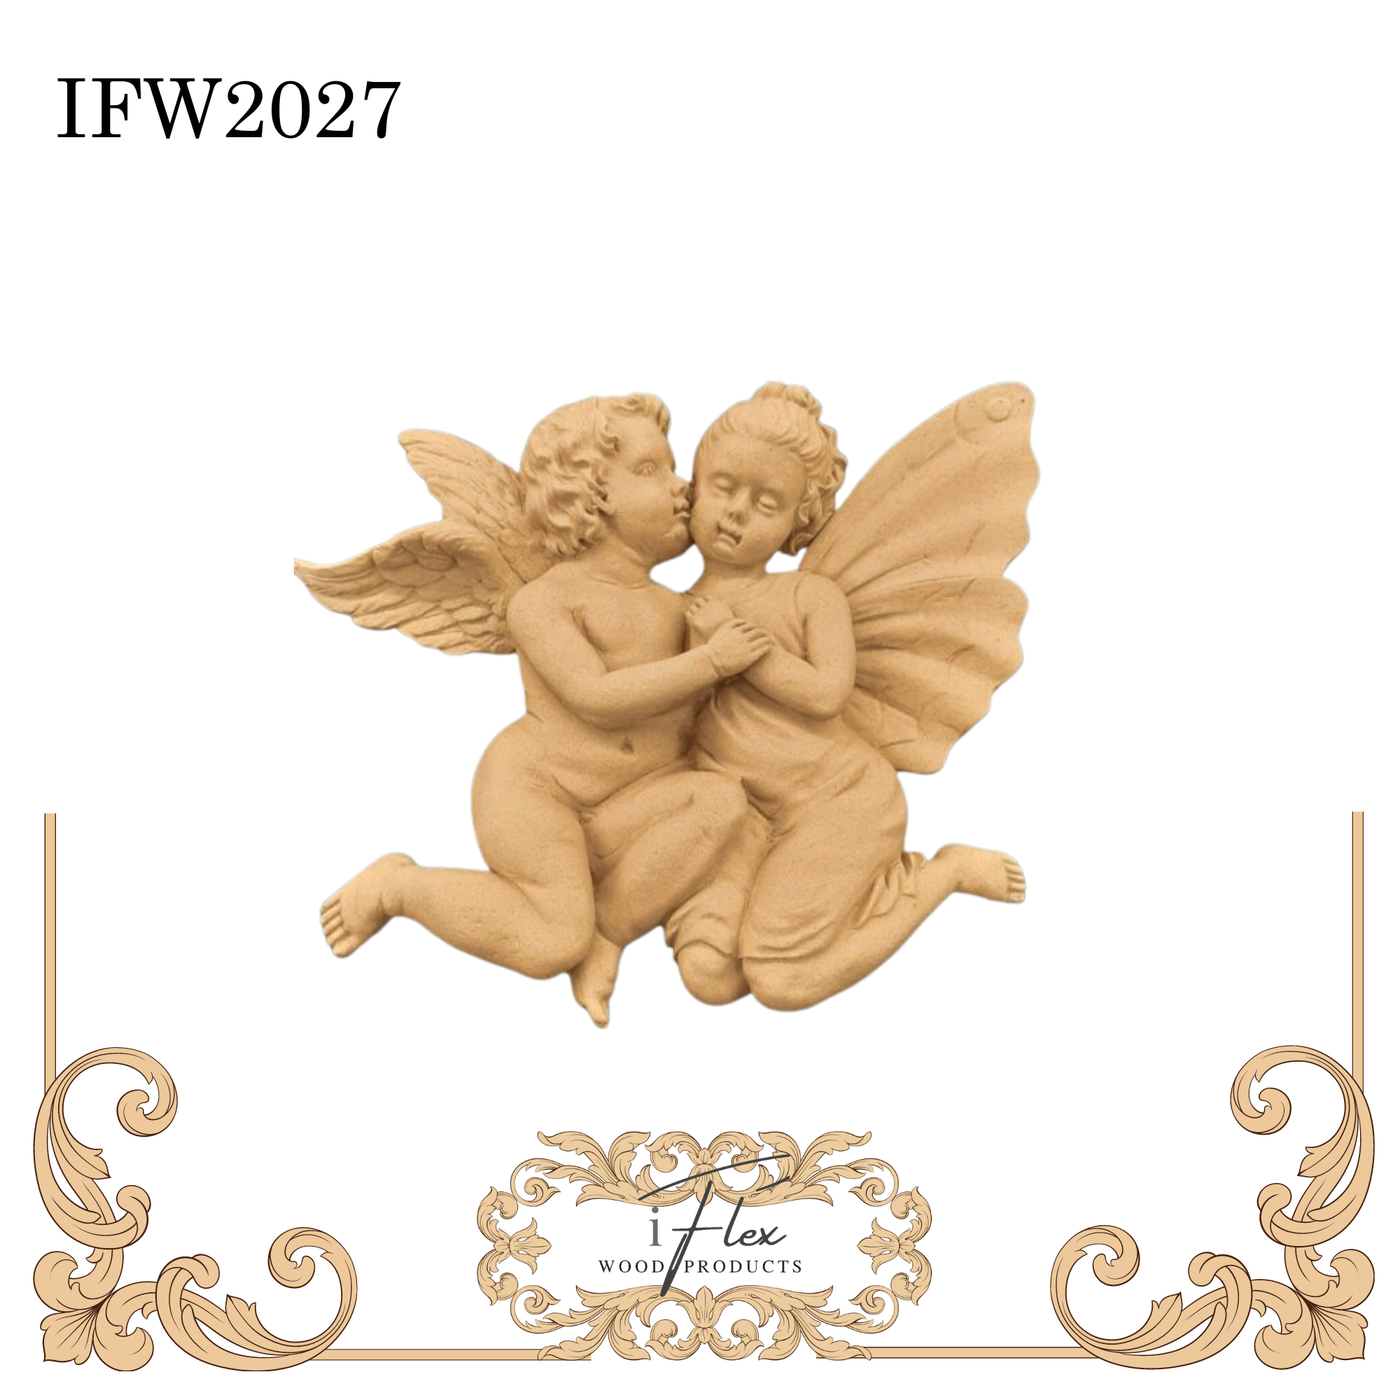 IFW 2027